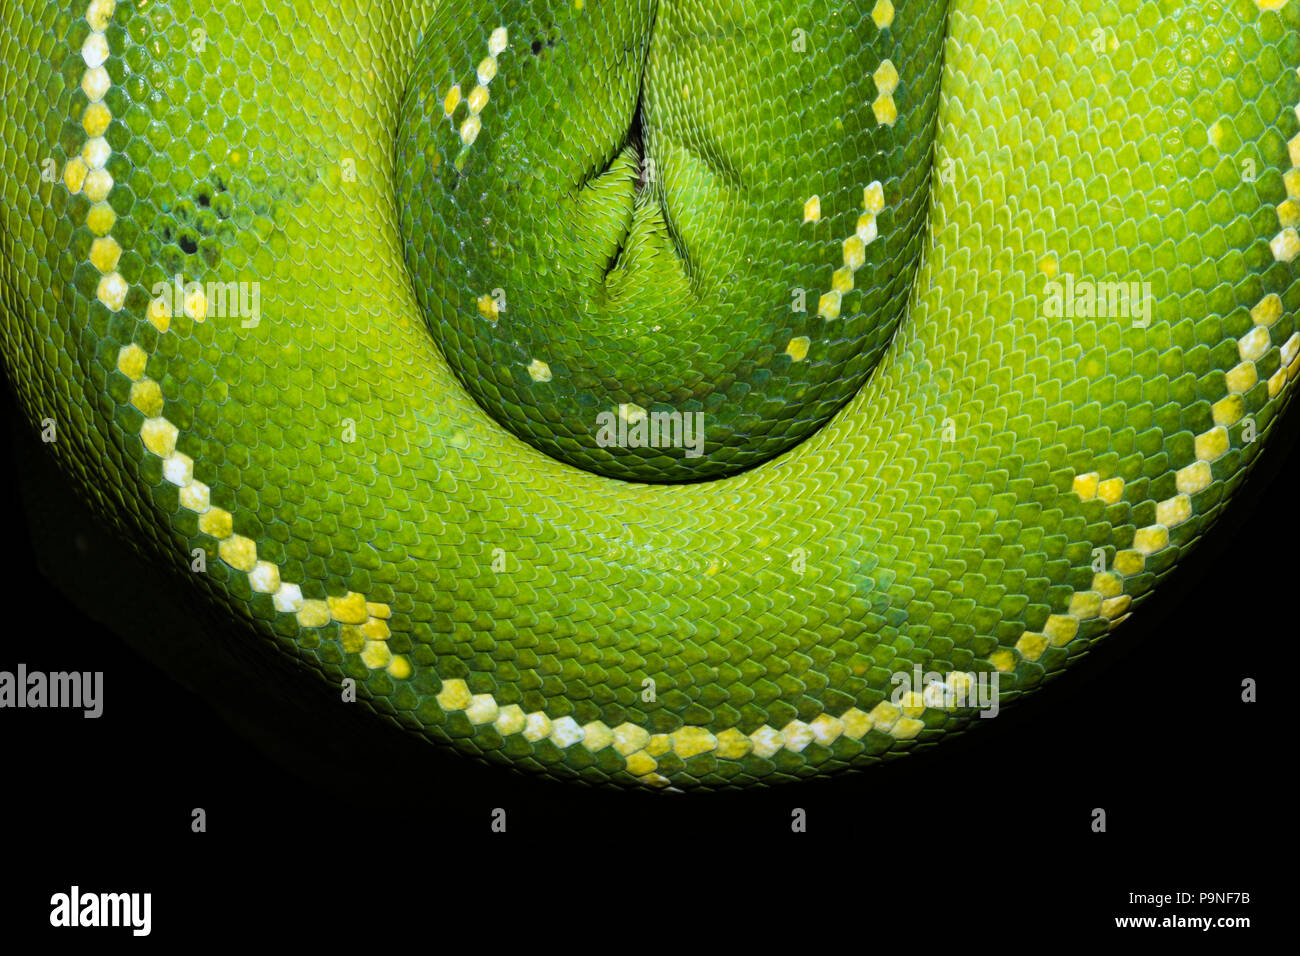 Der Smaragd Spulen und Schuppen eines Green Tree Python hängen. Stockfoto